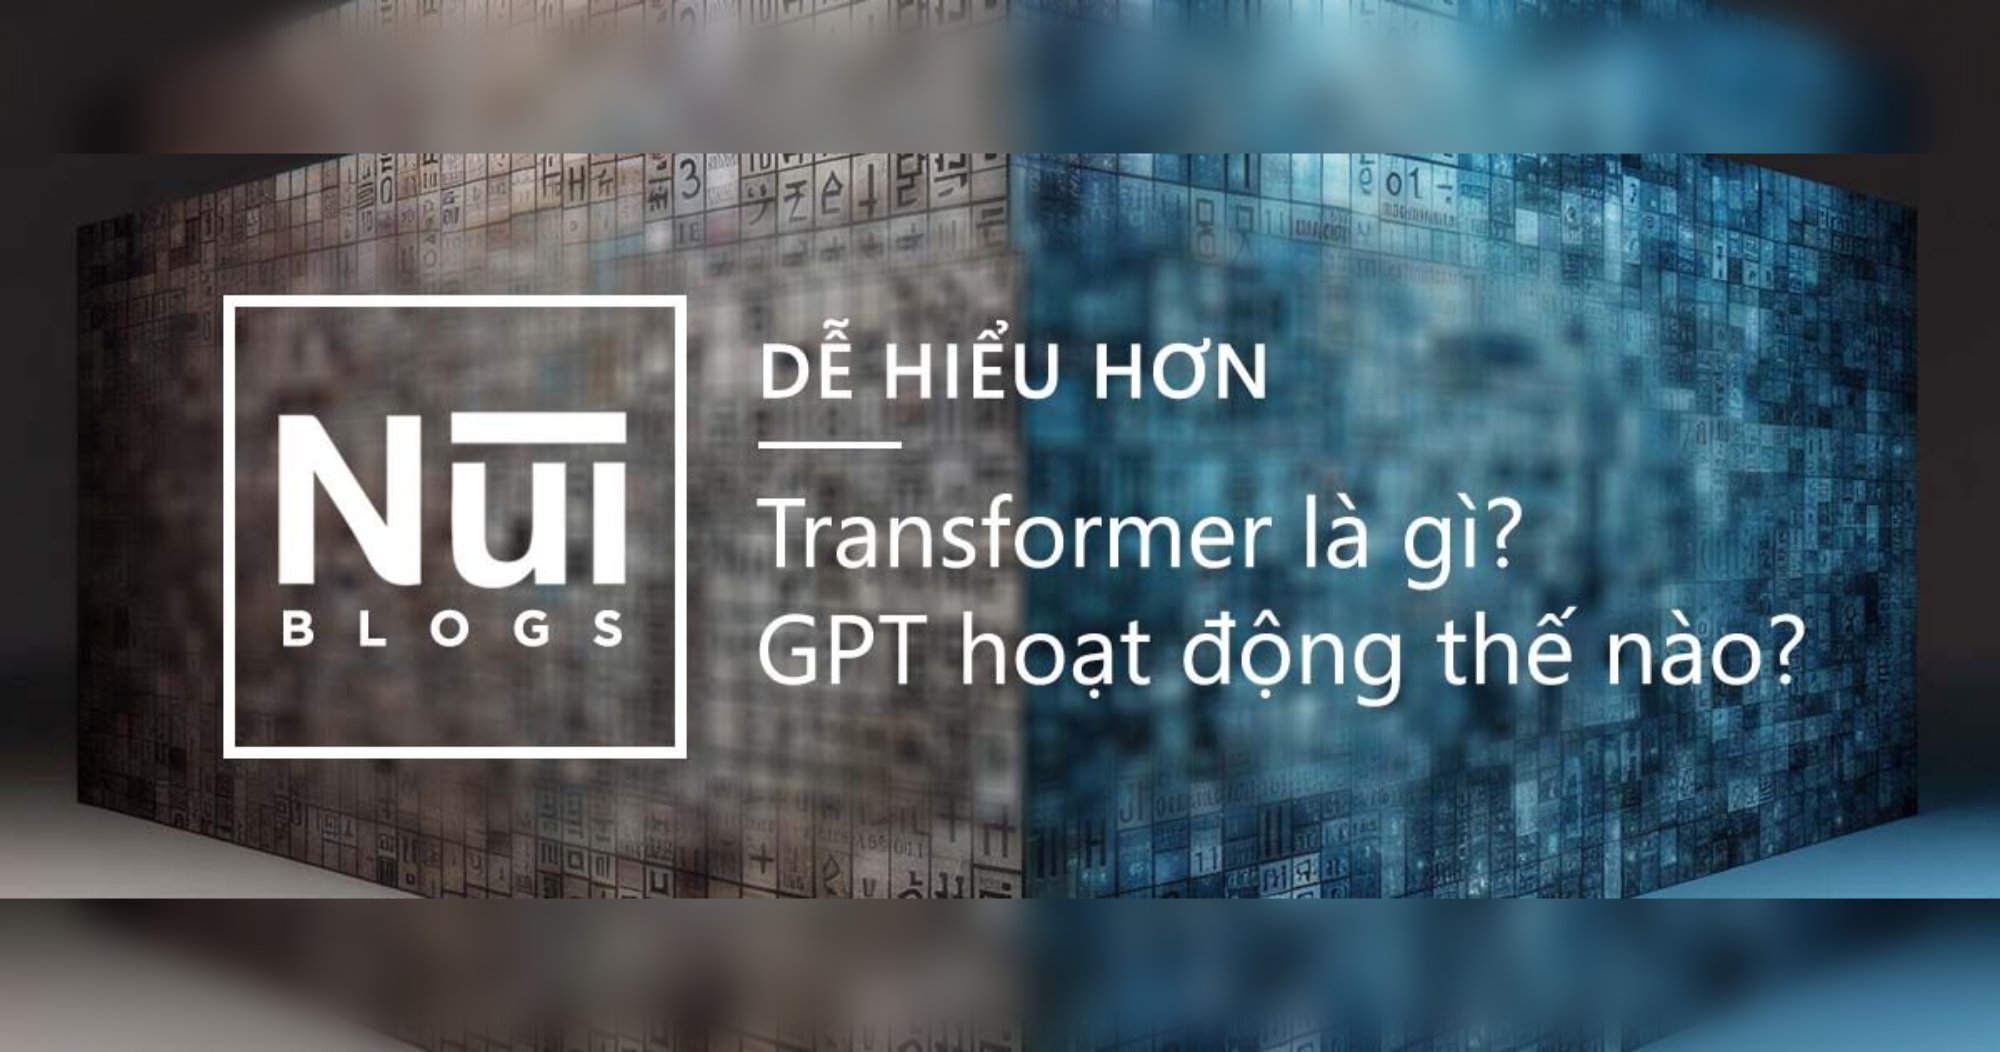 Dễ hiểu hơn: Transformer là gì? GPT hoạt động thế nào? 